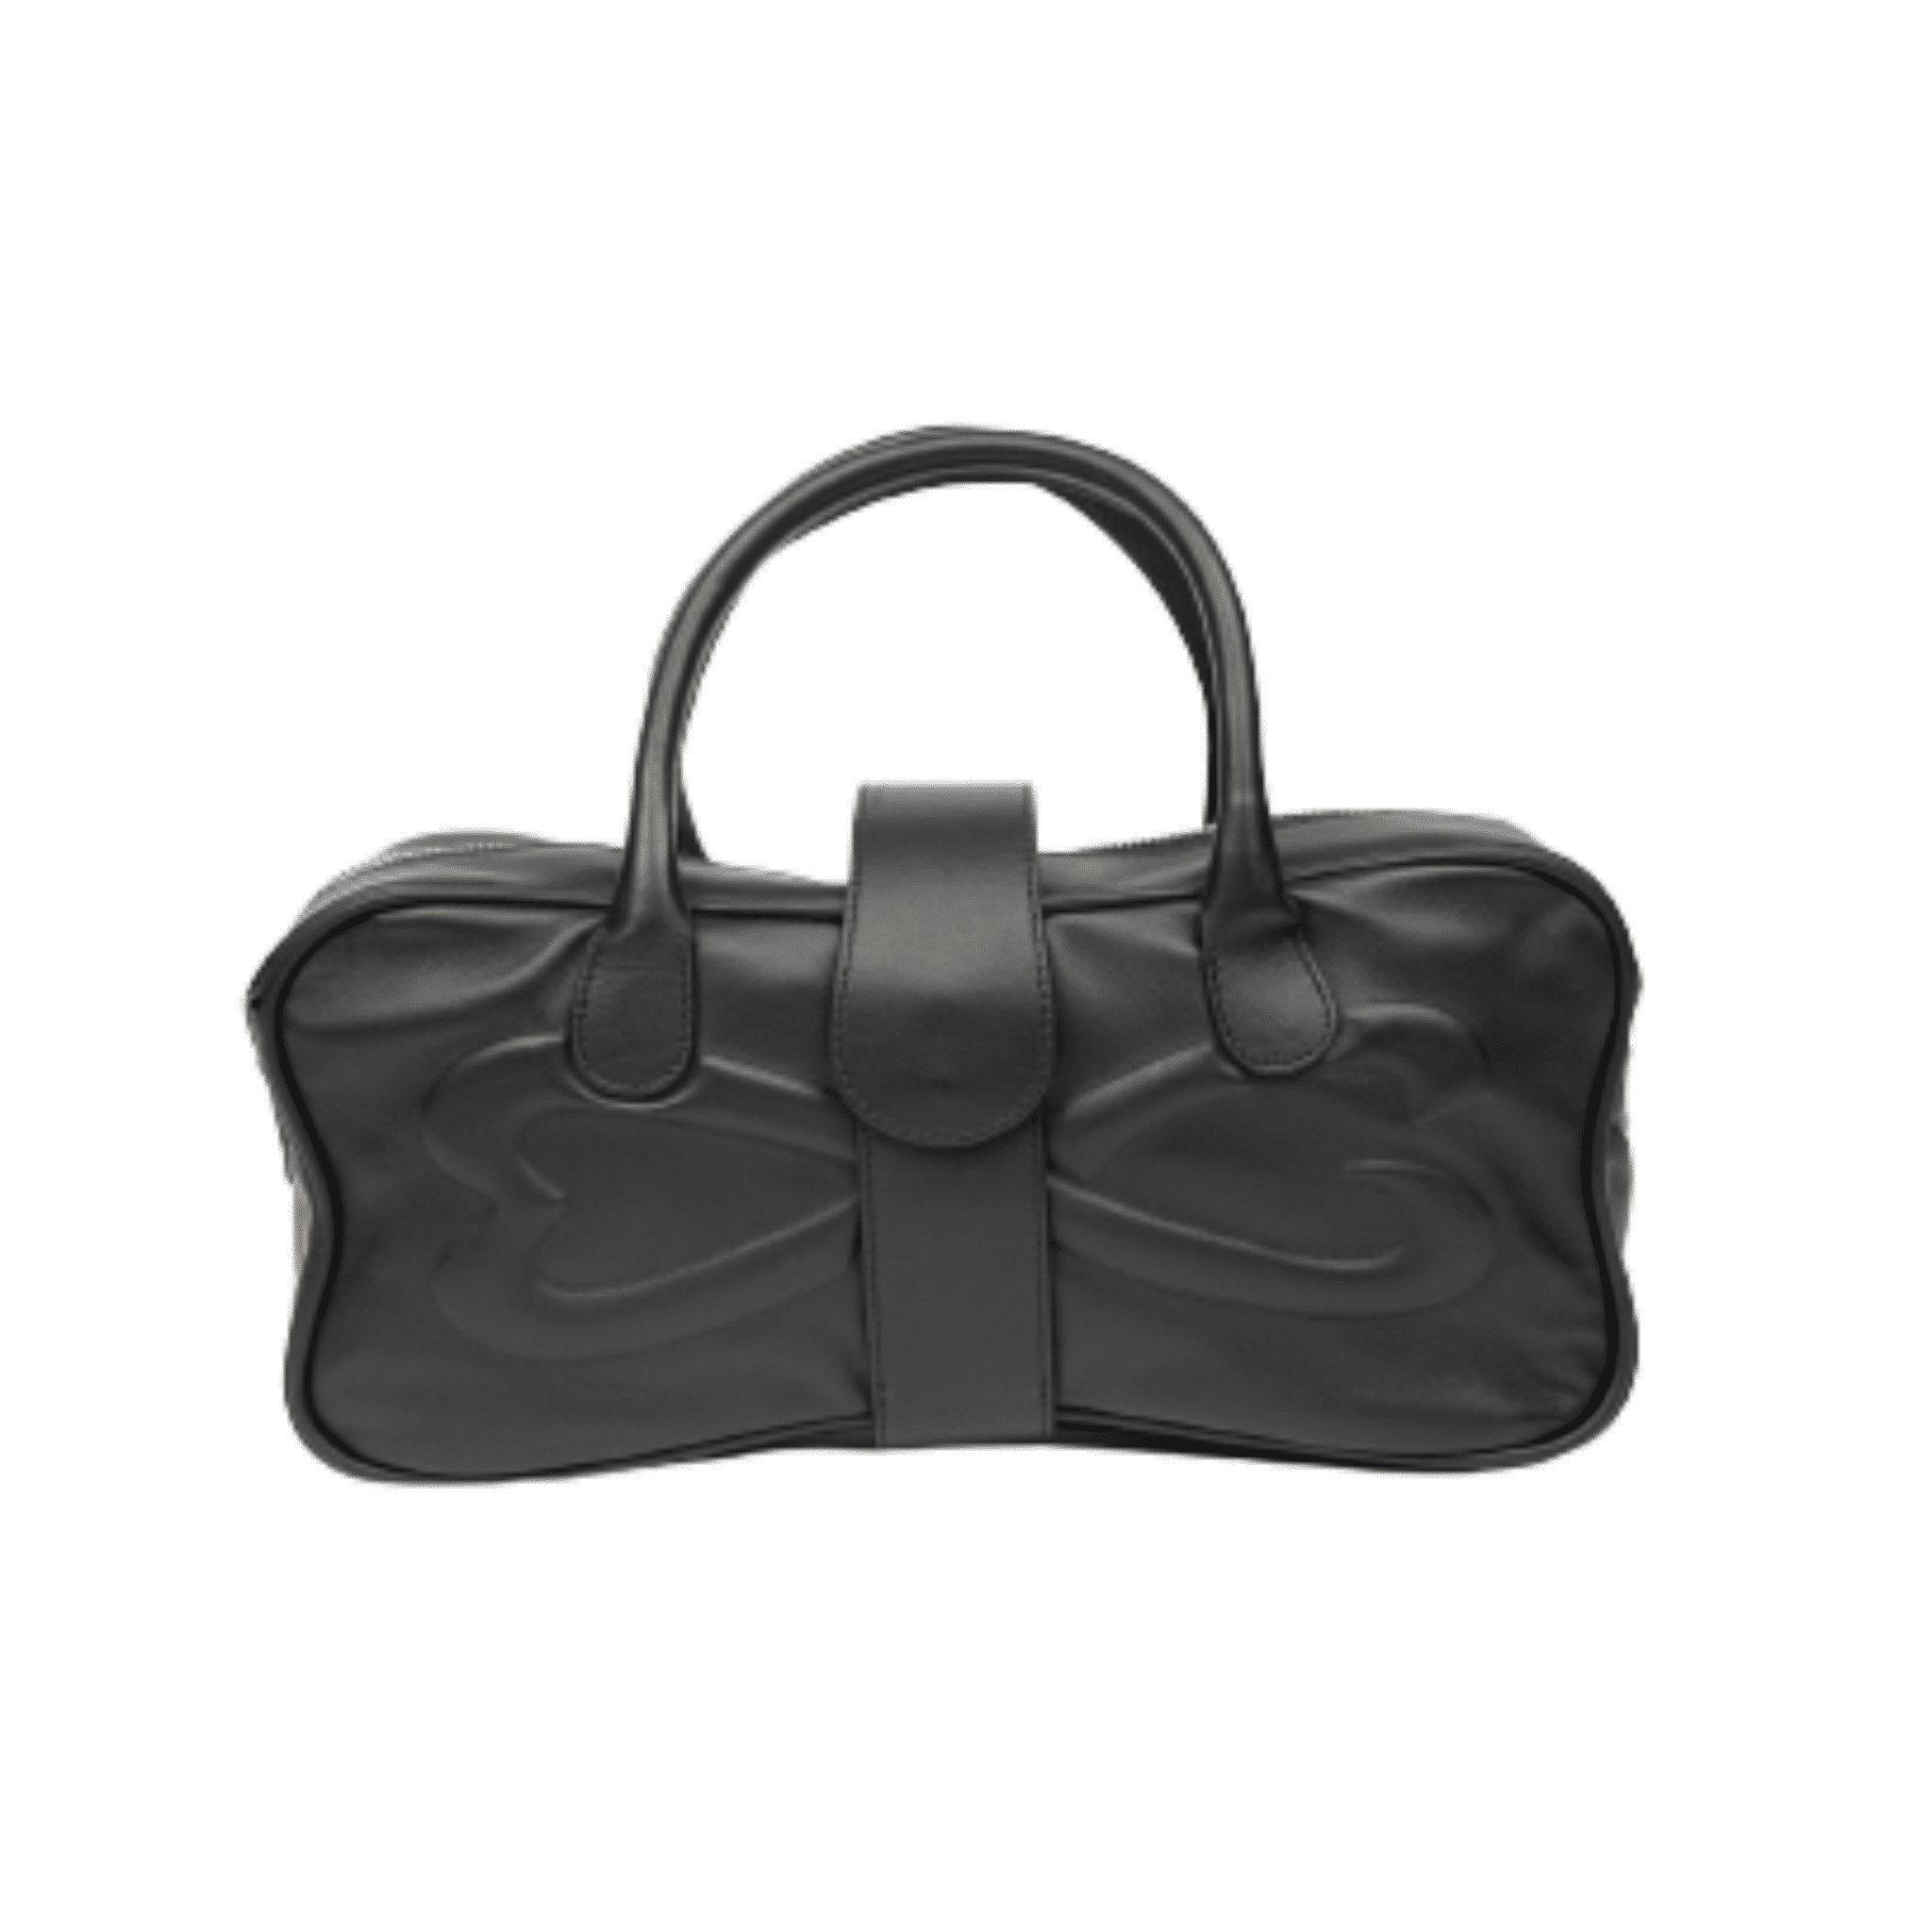 unique black nappa leather handbag